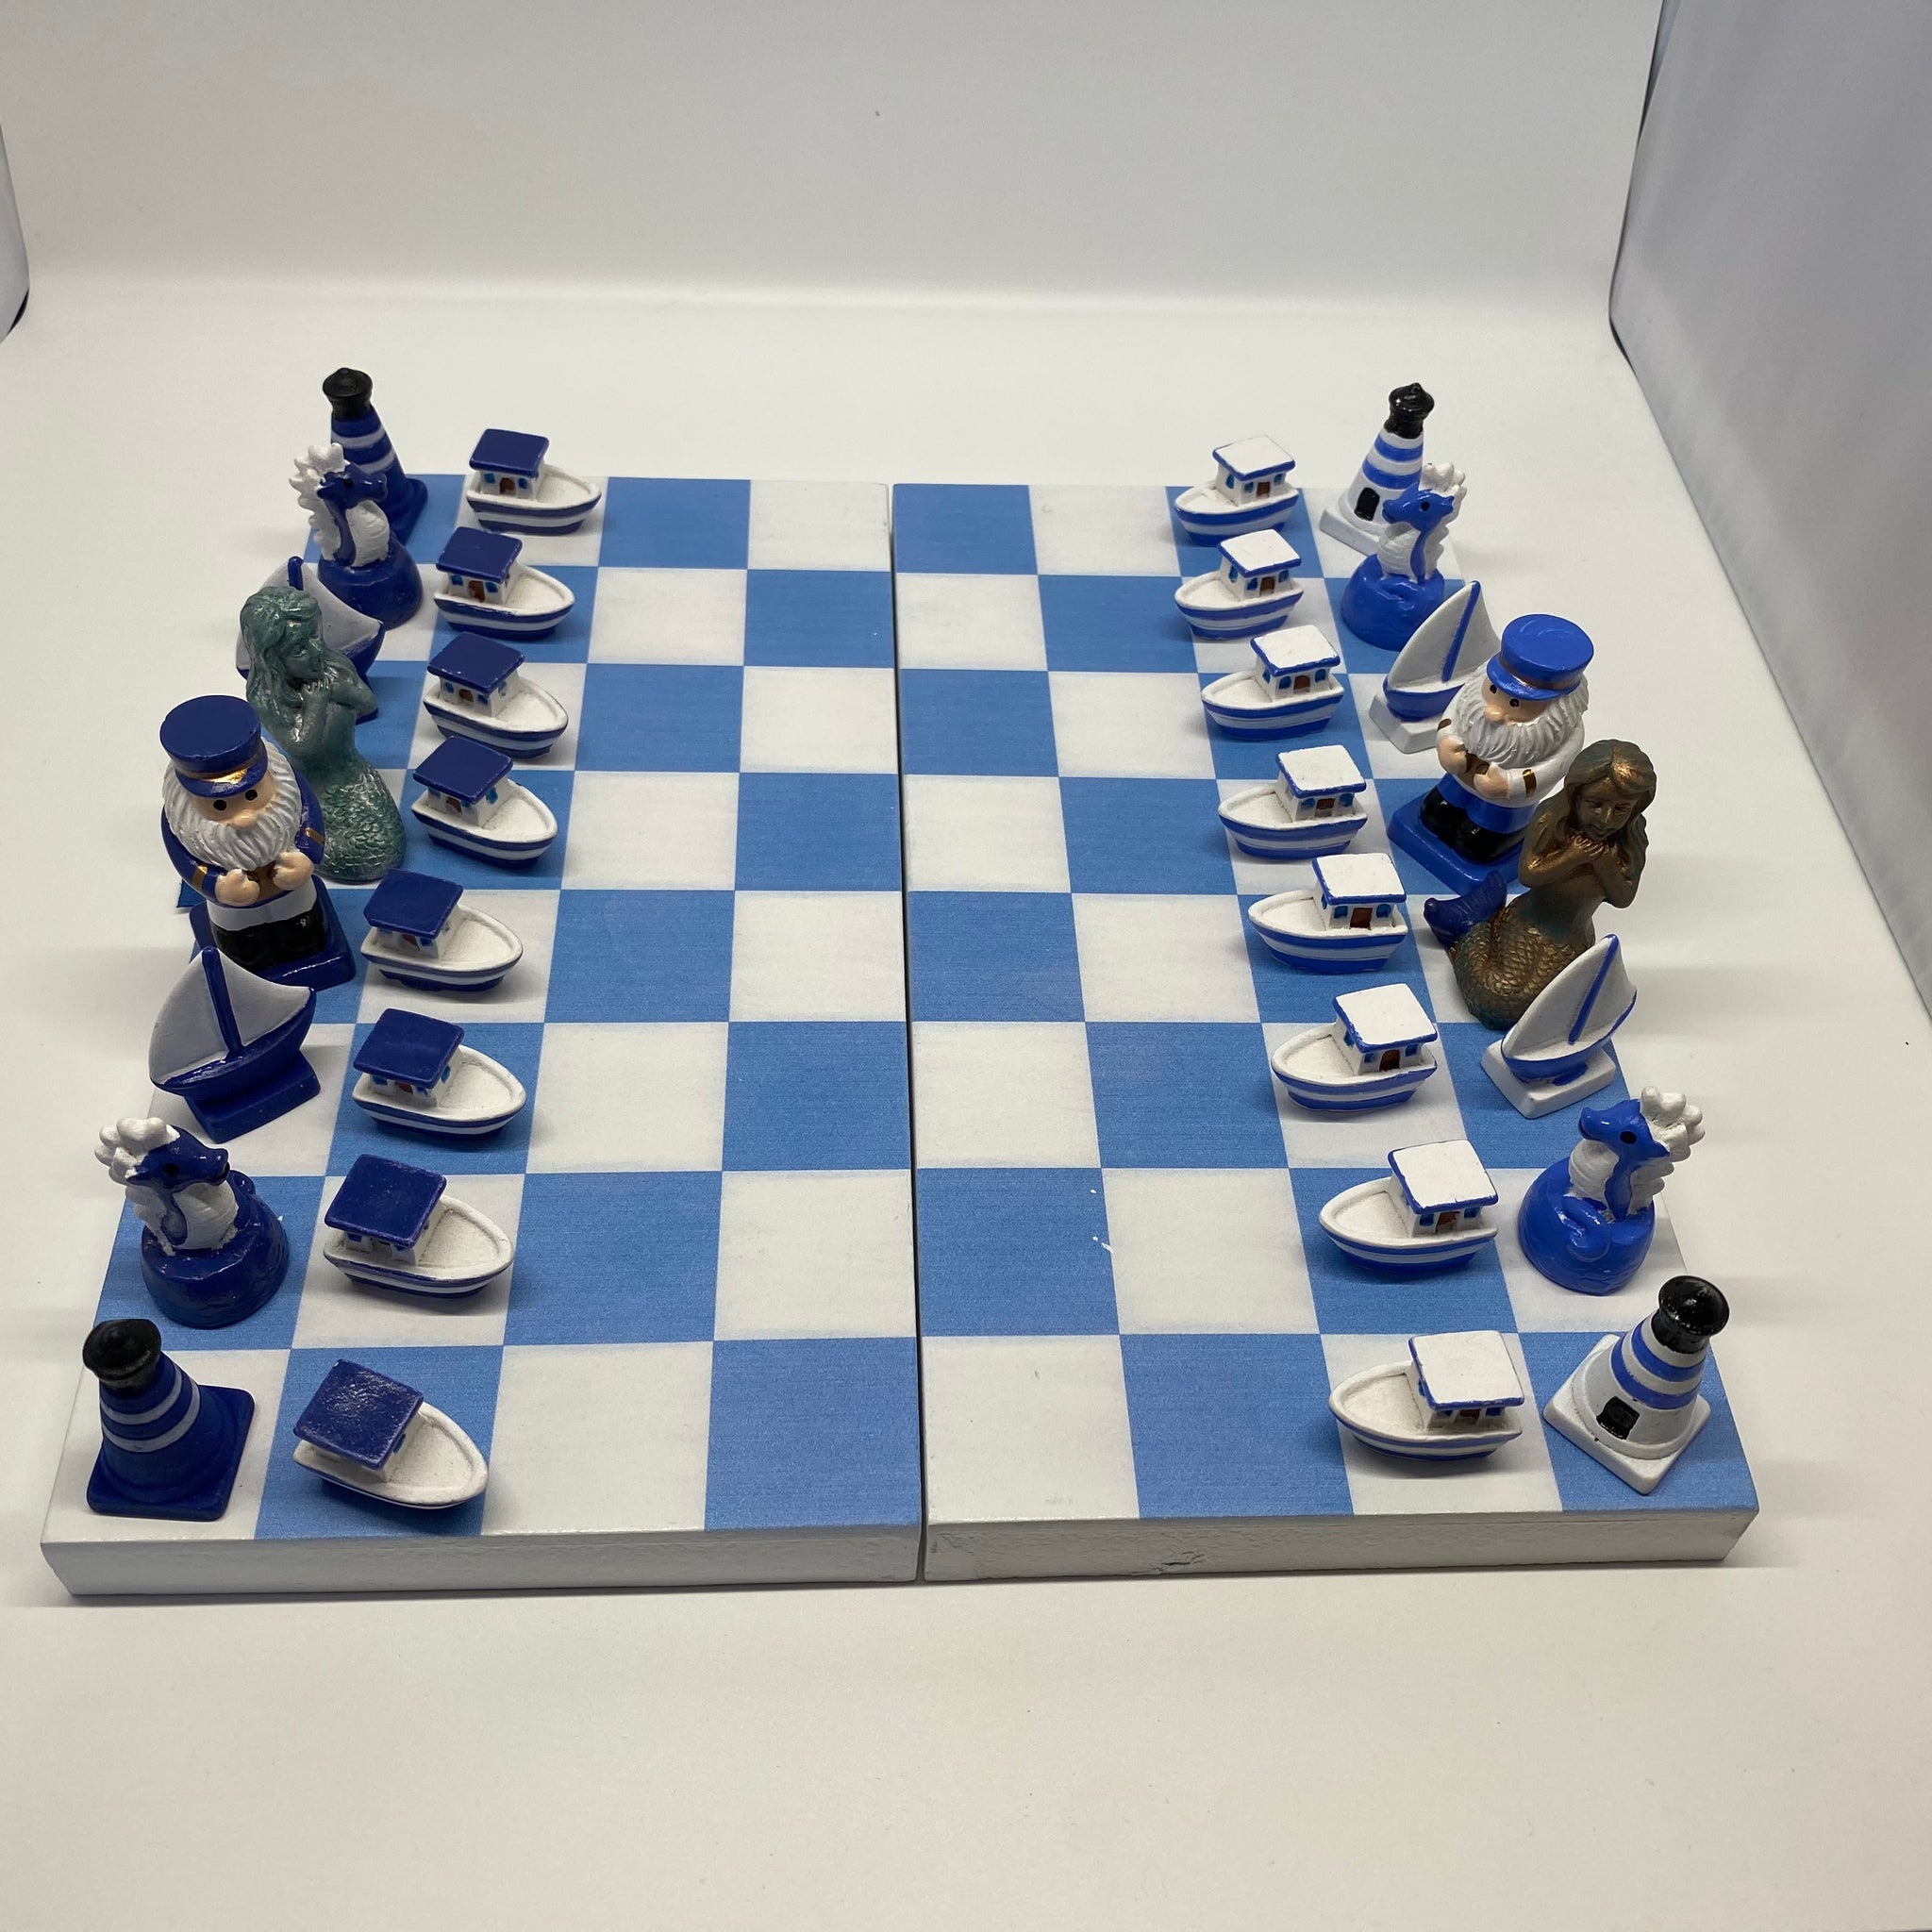 schach online zwei spieler